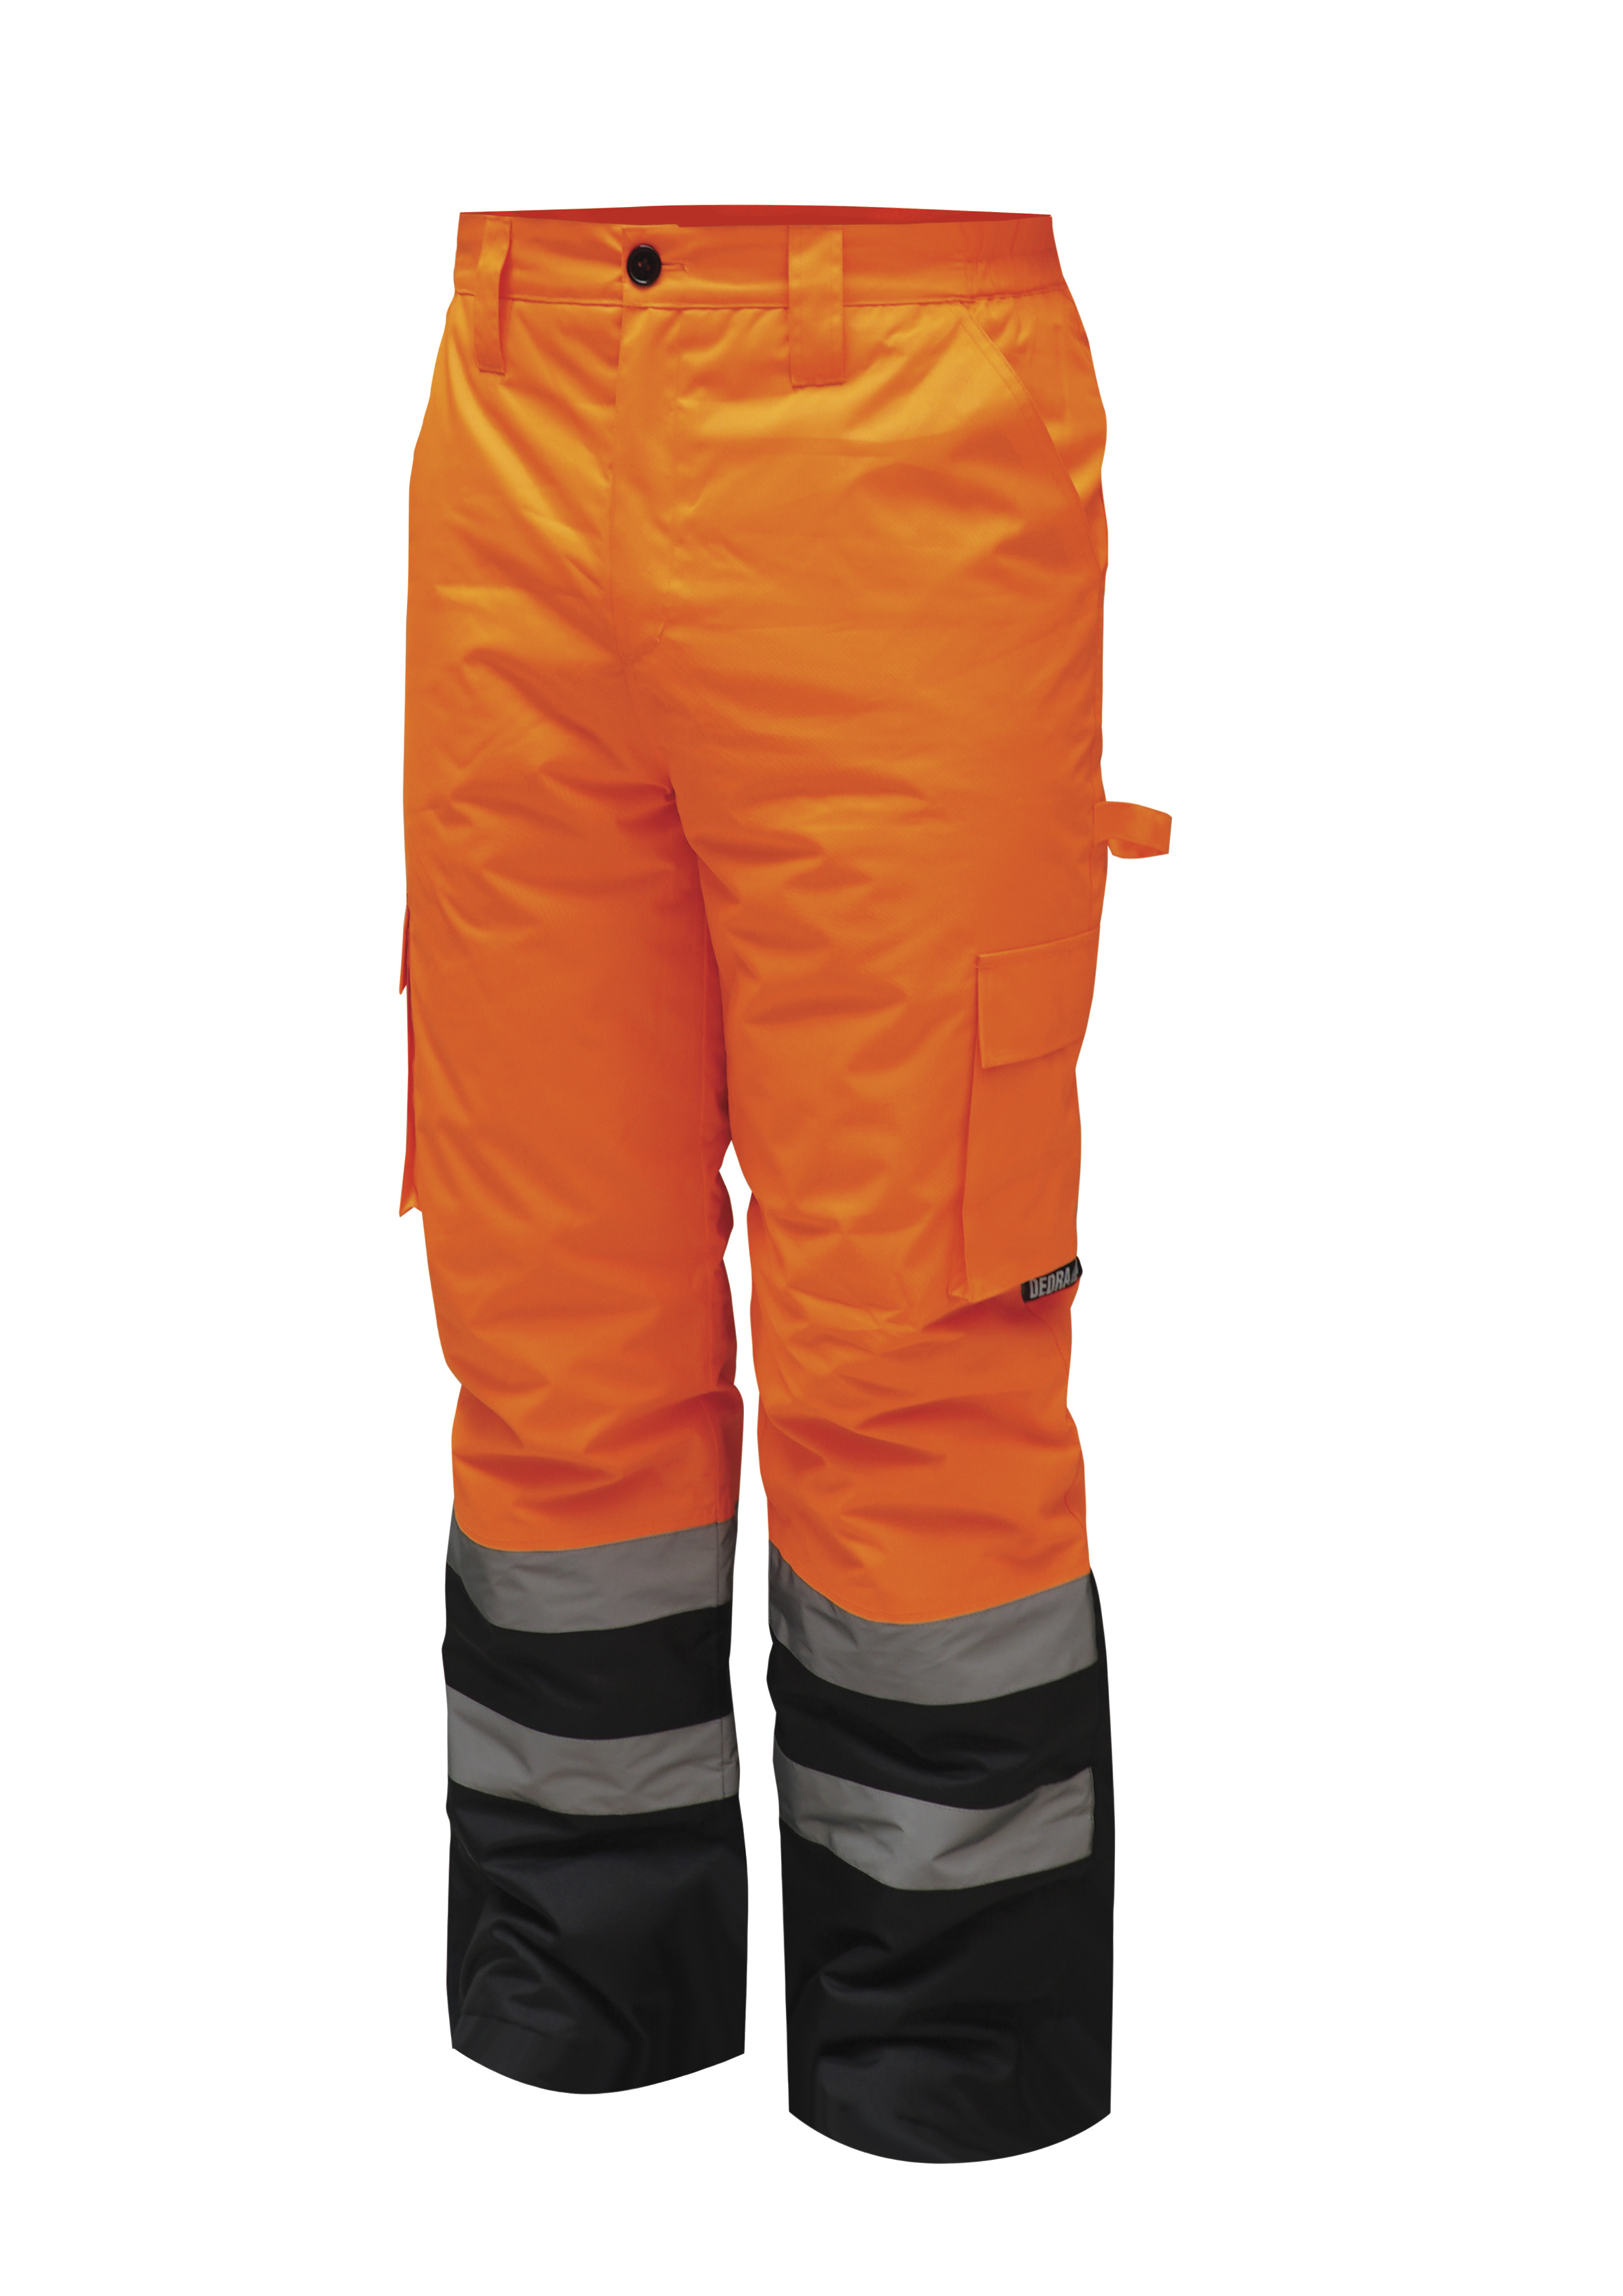 Reflexní zateplené kalhoty vel. XXXL, oranžové DEDRA BH80SP2-XXXL + Dárek, servis bez starostí v hodnotě 300Kč